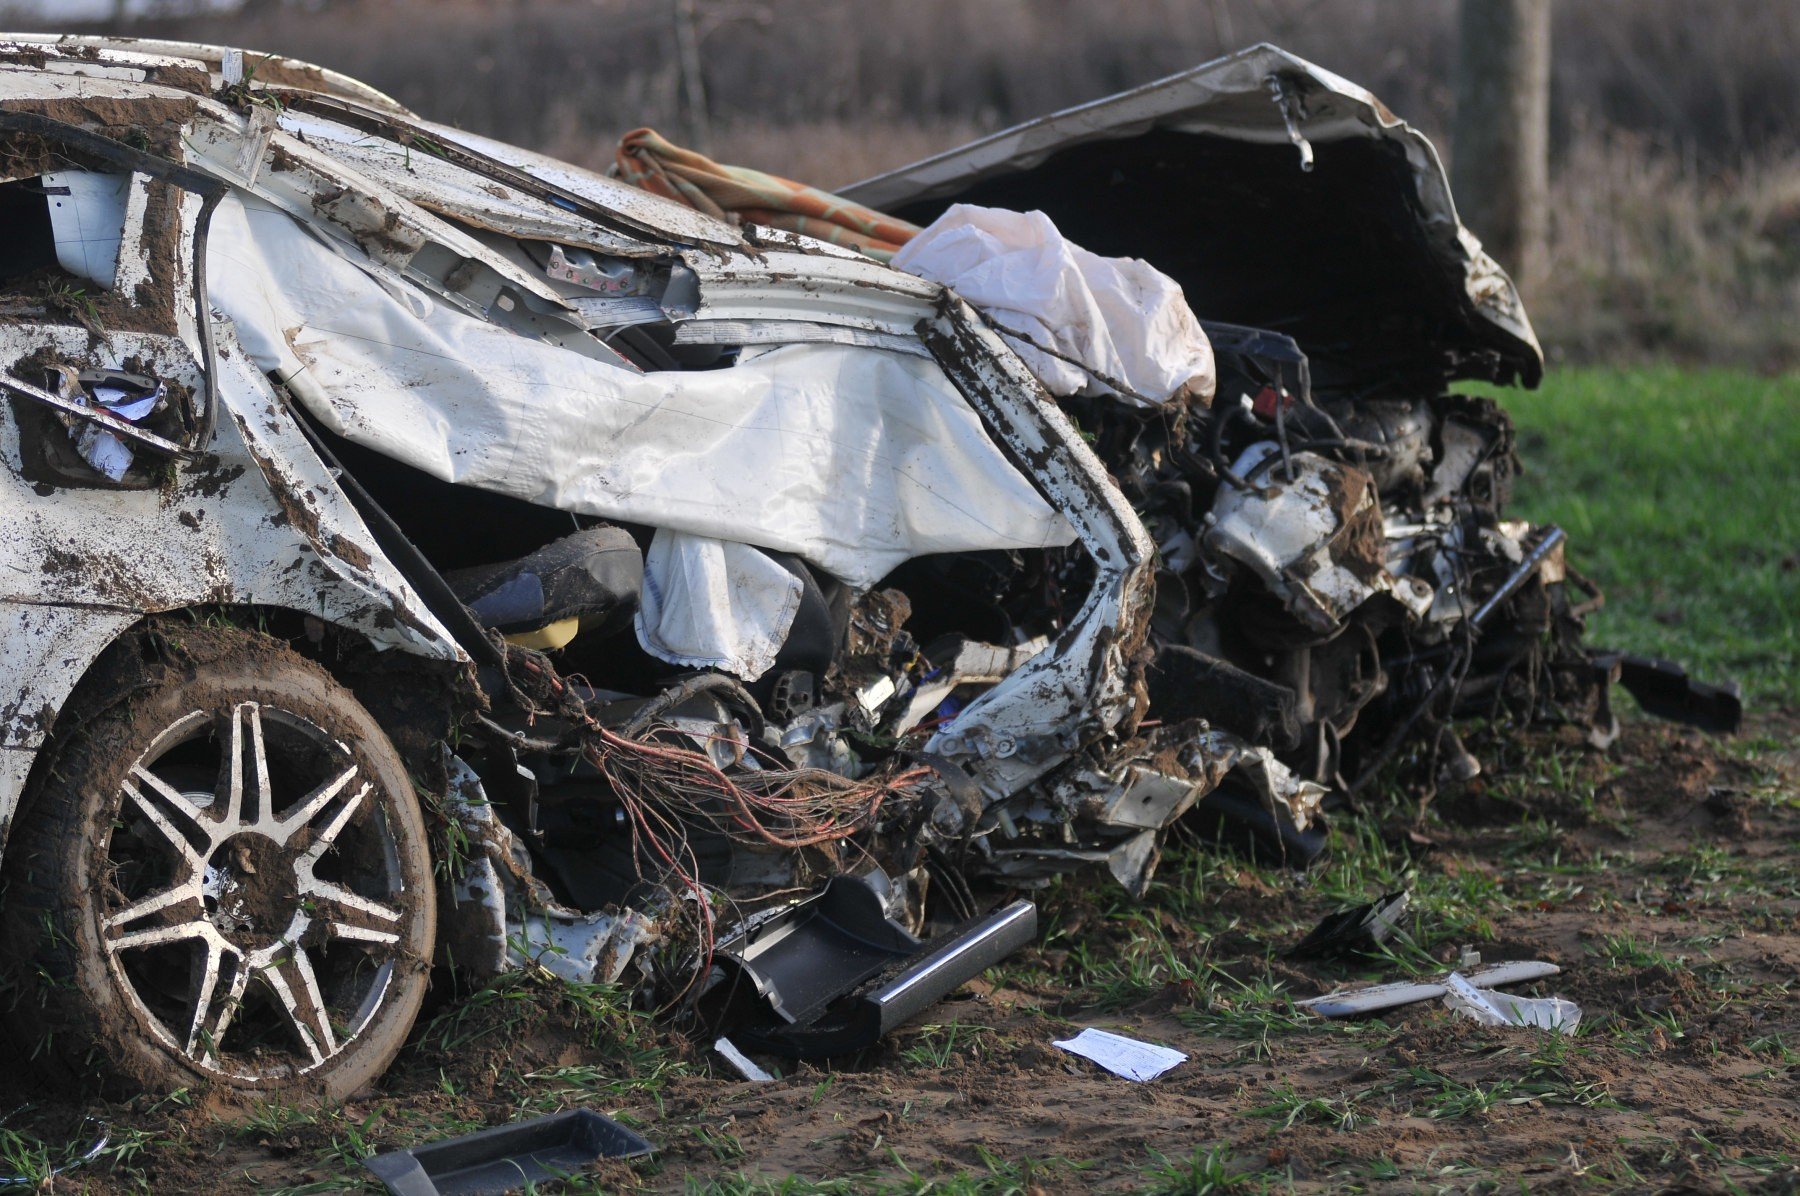 Makabrycznie wyglądający wypadek pod Gorzowem. Mercedes